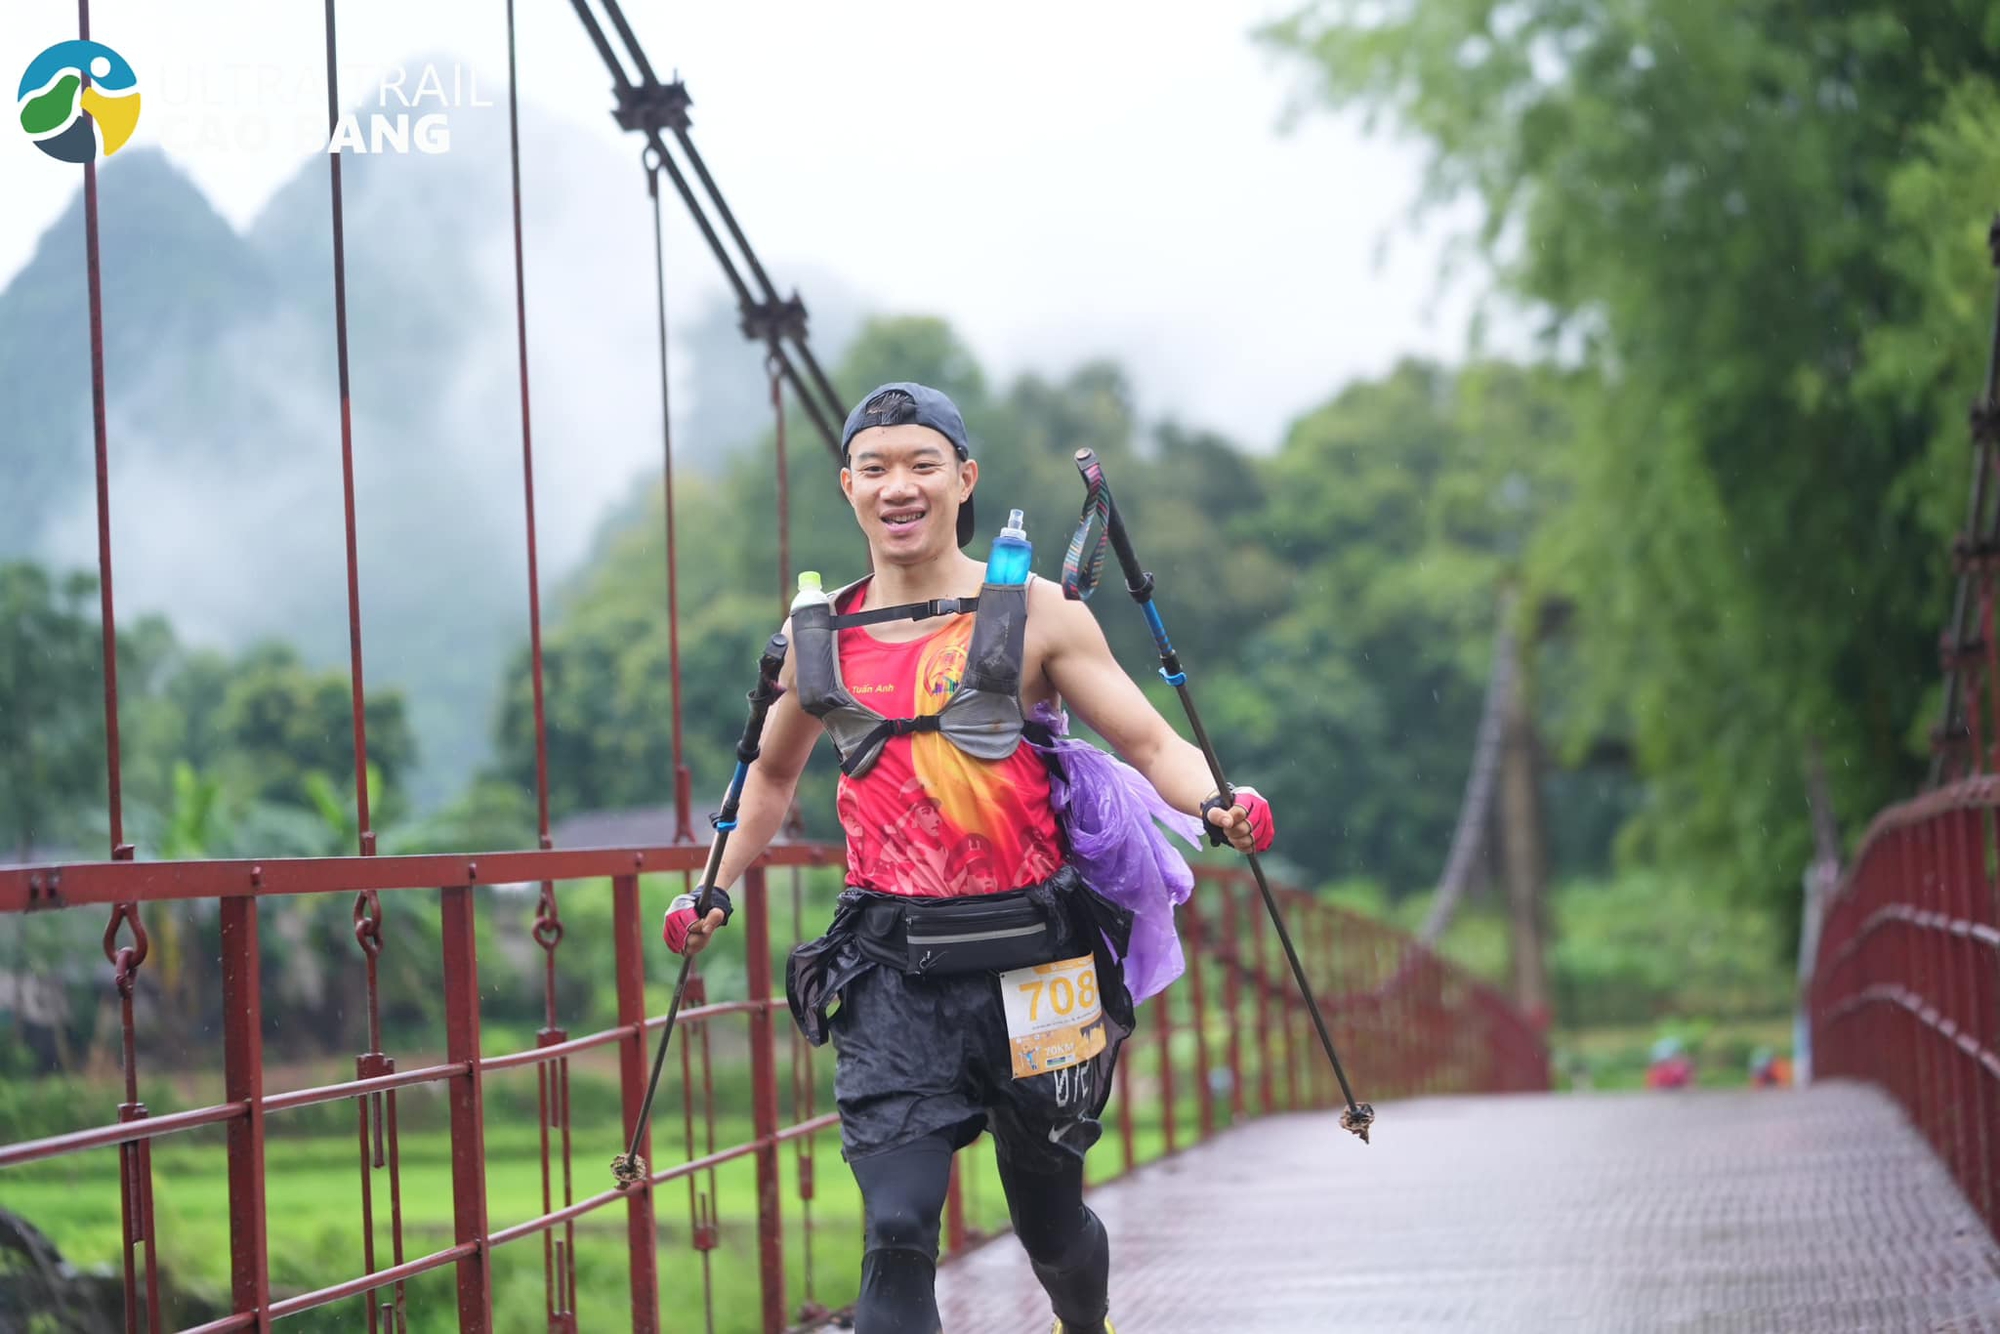 Phát hiện mắc K khi mới 29 tuổi, chàng chiến sỹ công an vực dậy bản thân bằng chuyến đạp xe xuyên Việt, chinh phục Full Marathon với thành tích đáng nể - Ảnh 6.